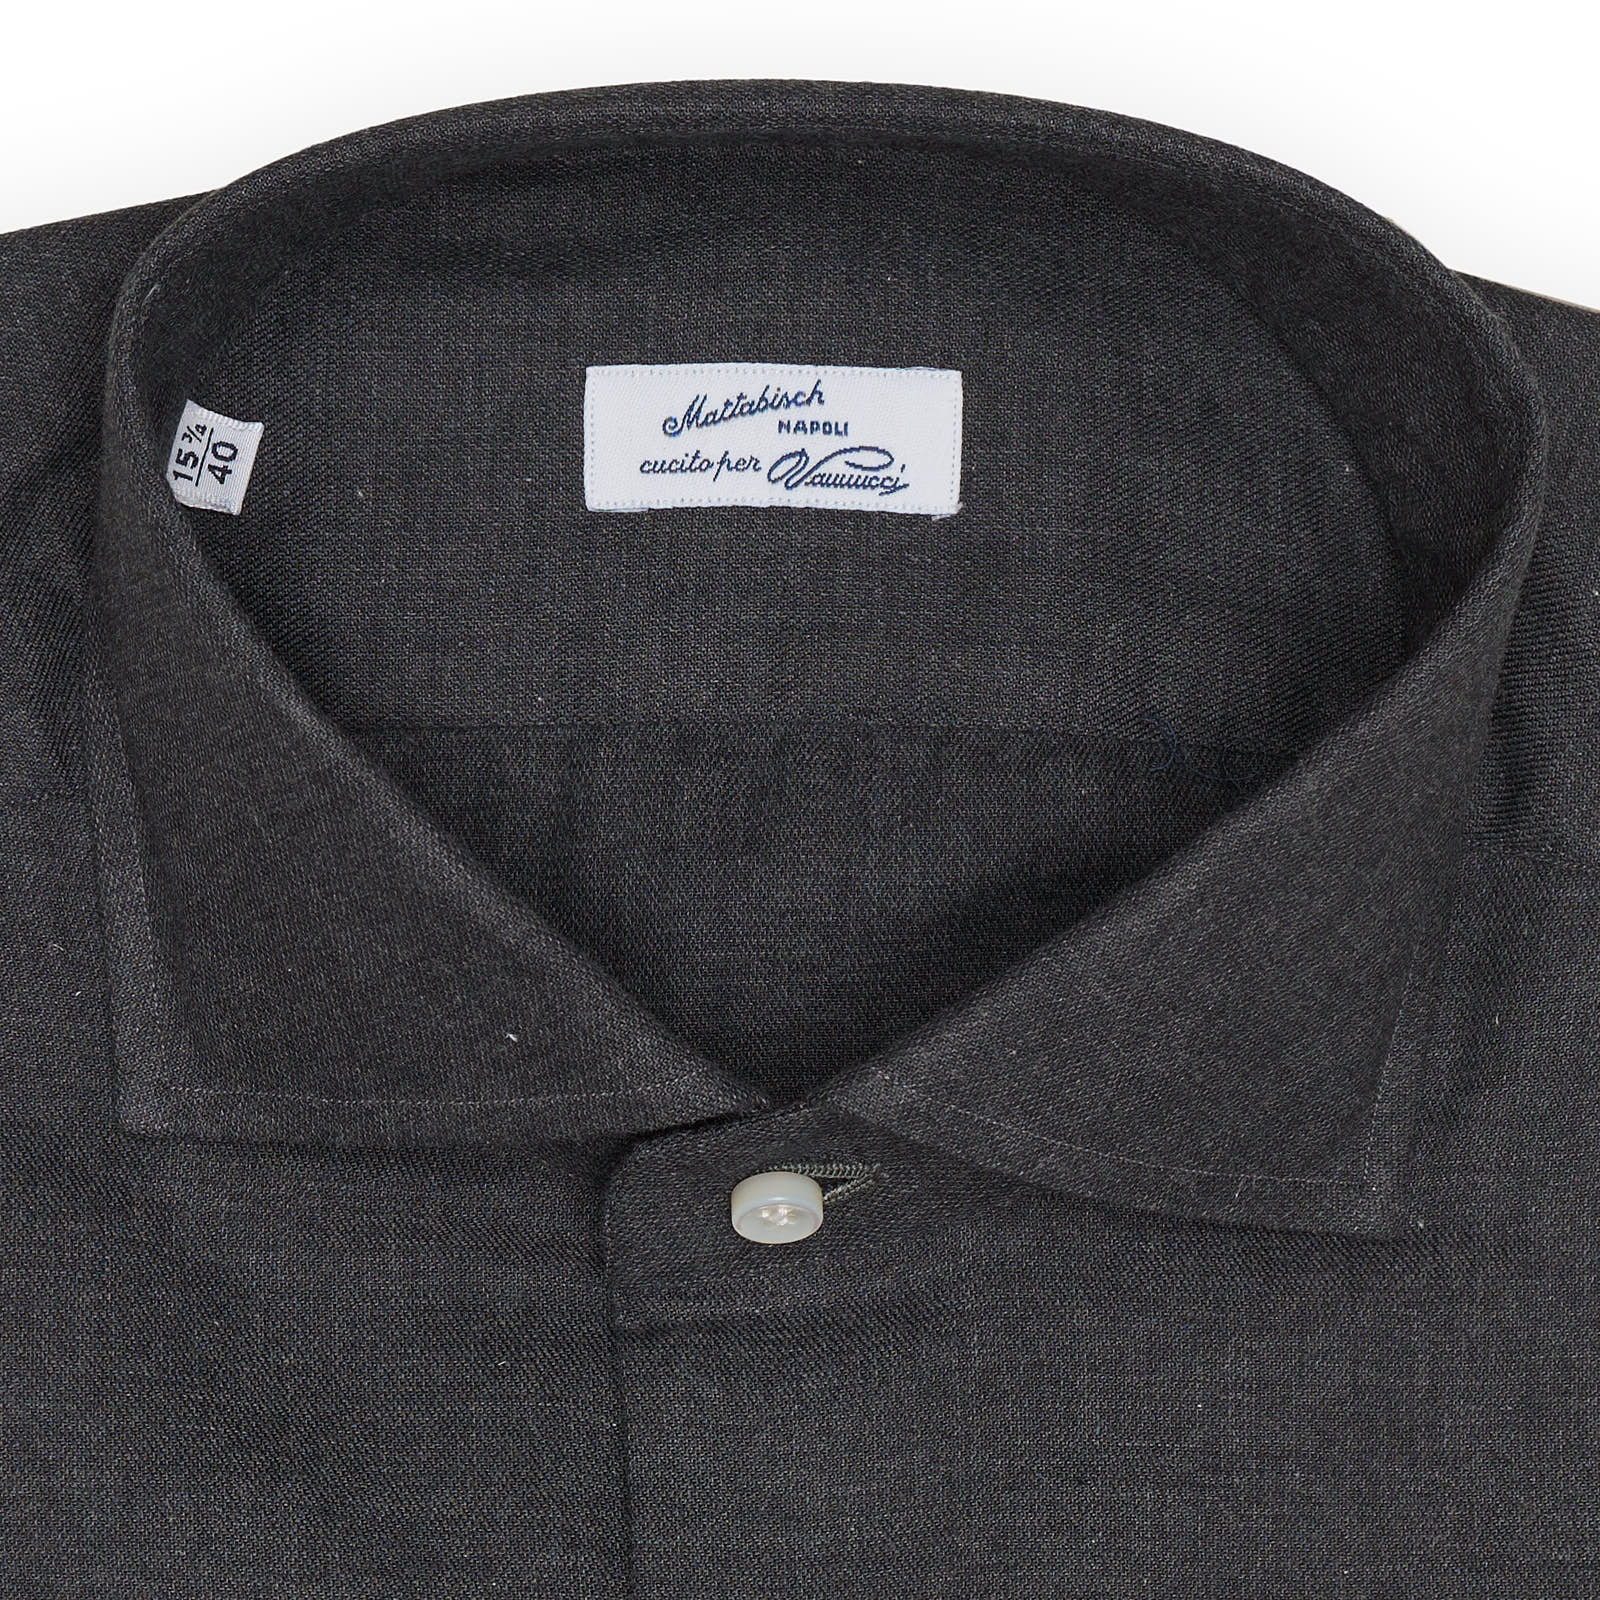 MATTABISCH for VANNUCCI Gray Cotton Dress Shirt EU 40 US 15.75